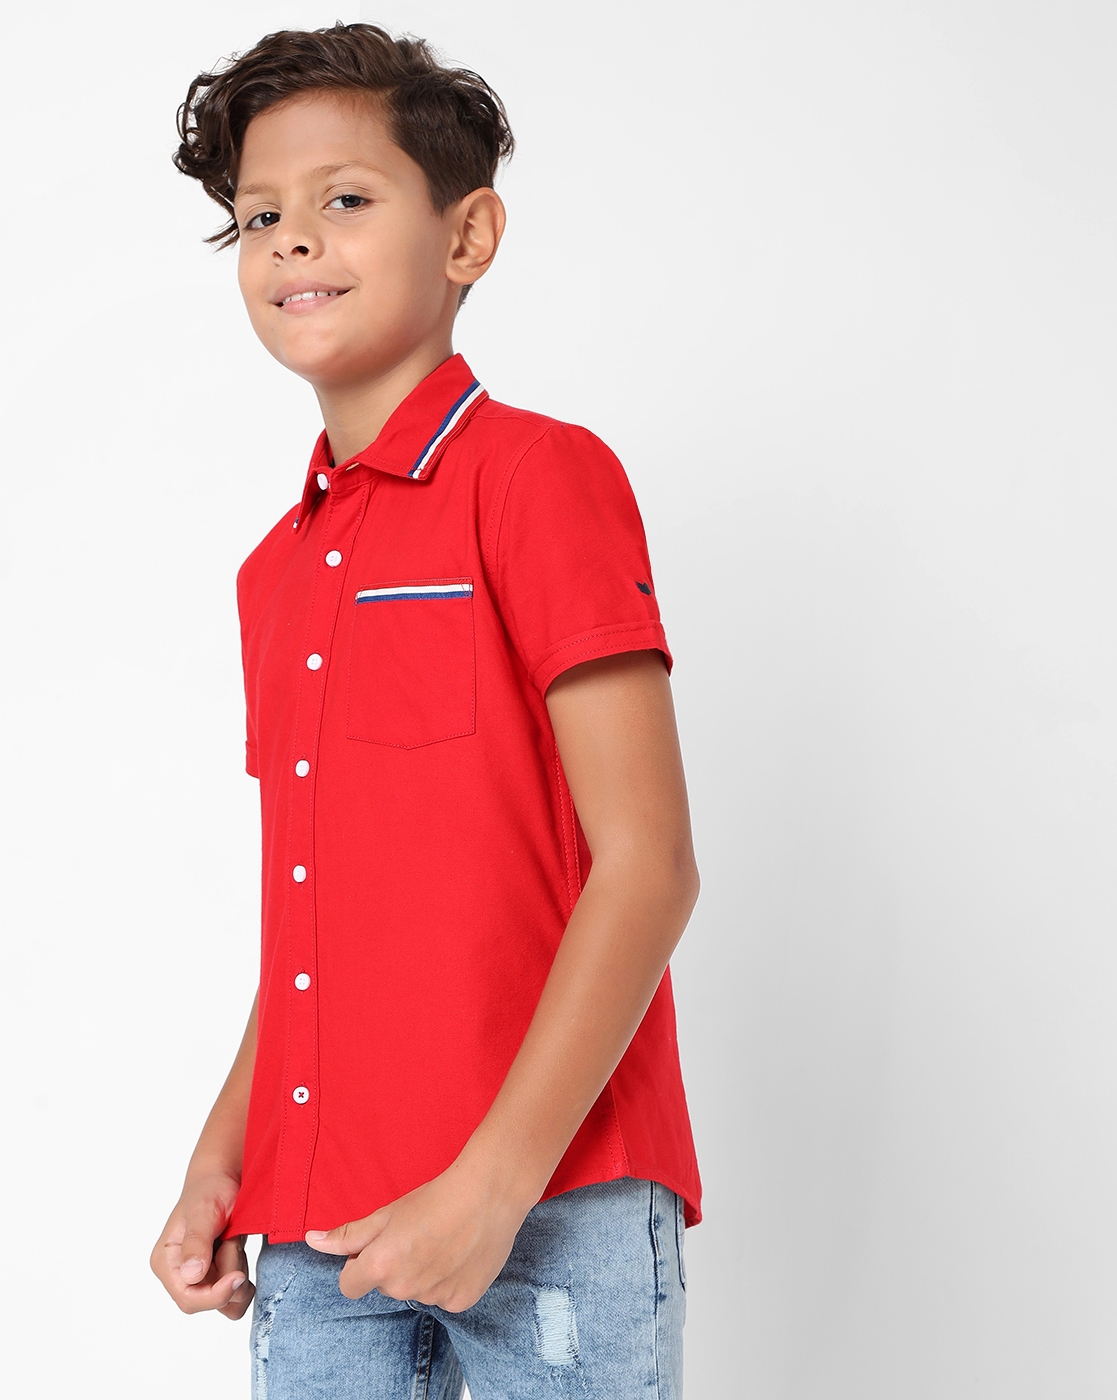 GAS | Boys Bruno Jr IN Shirt  